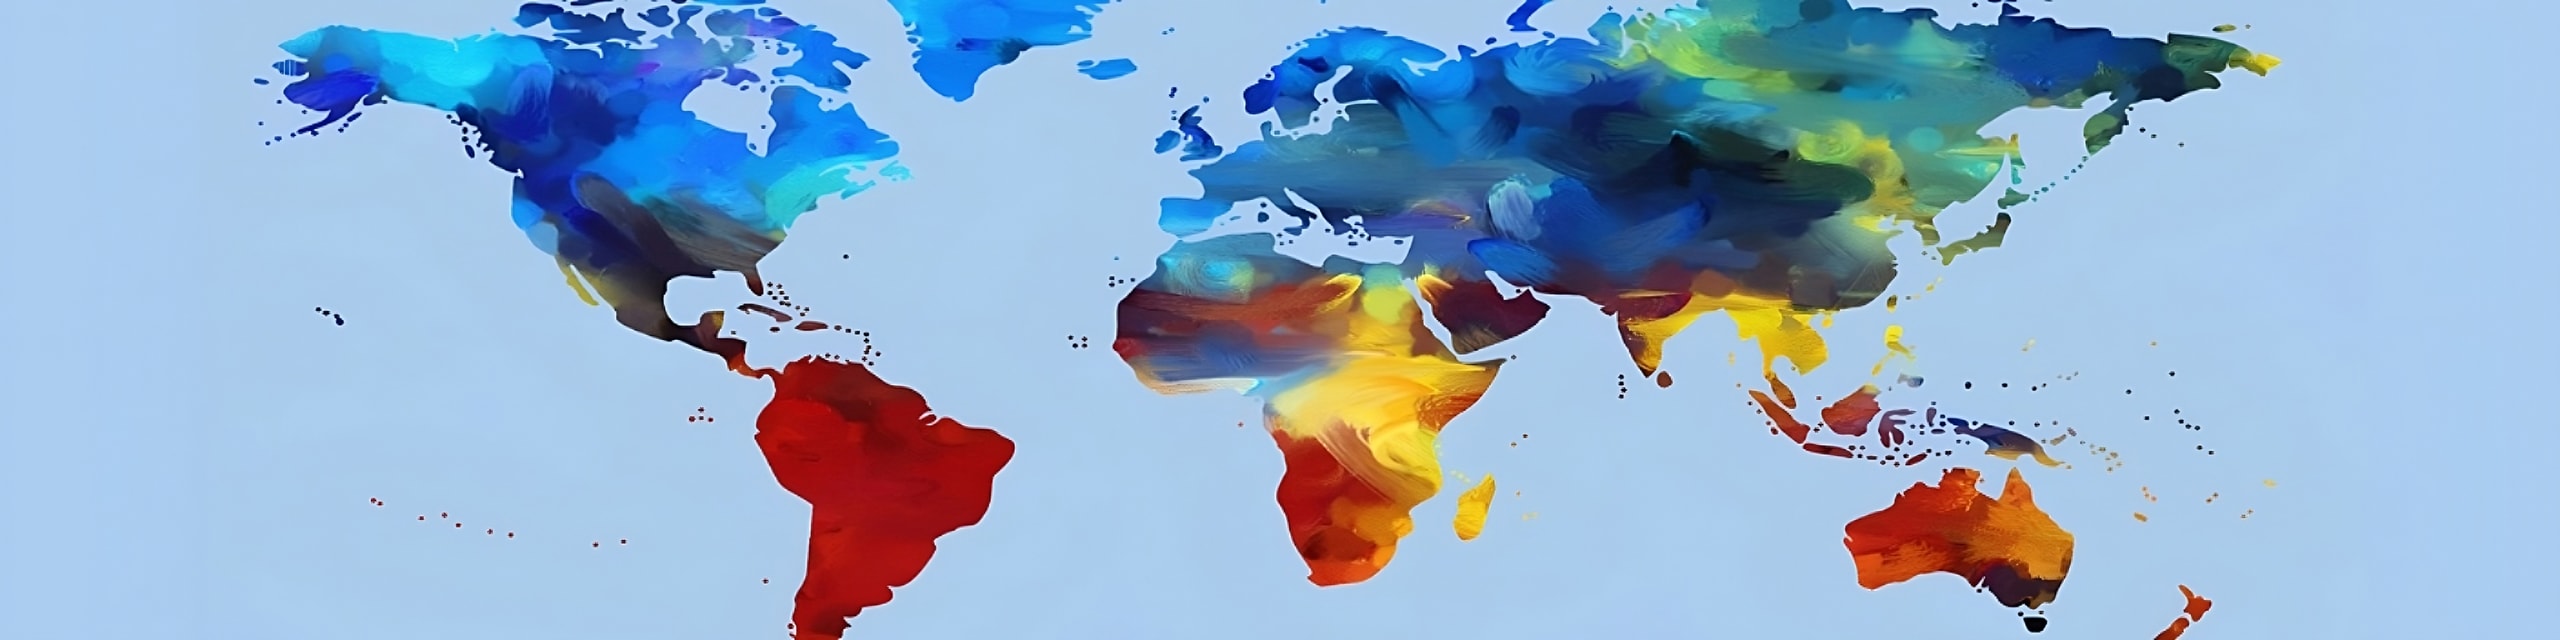 Représentation artistique et colorée d'une carte du monde